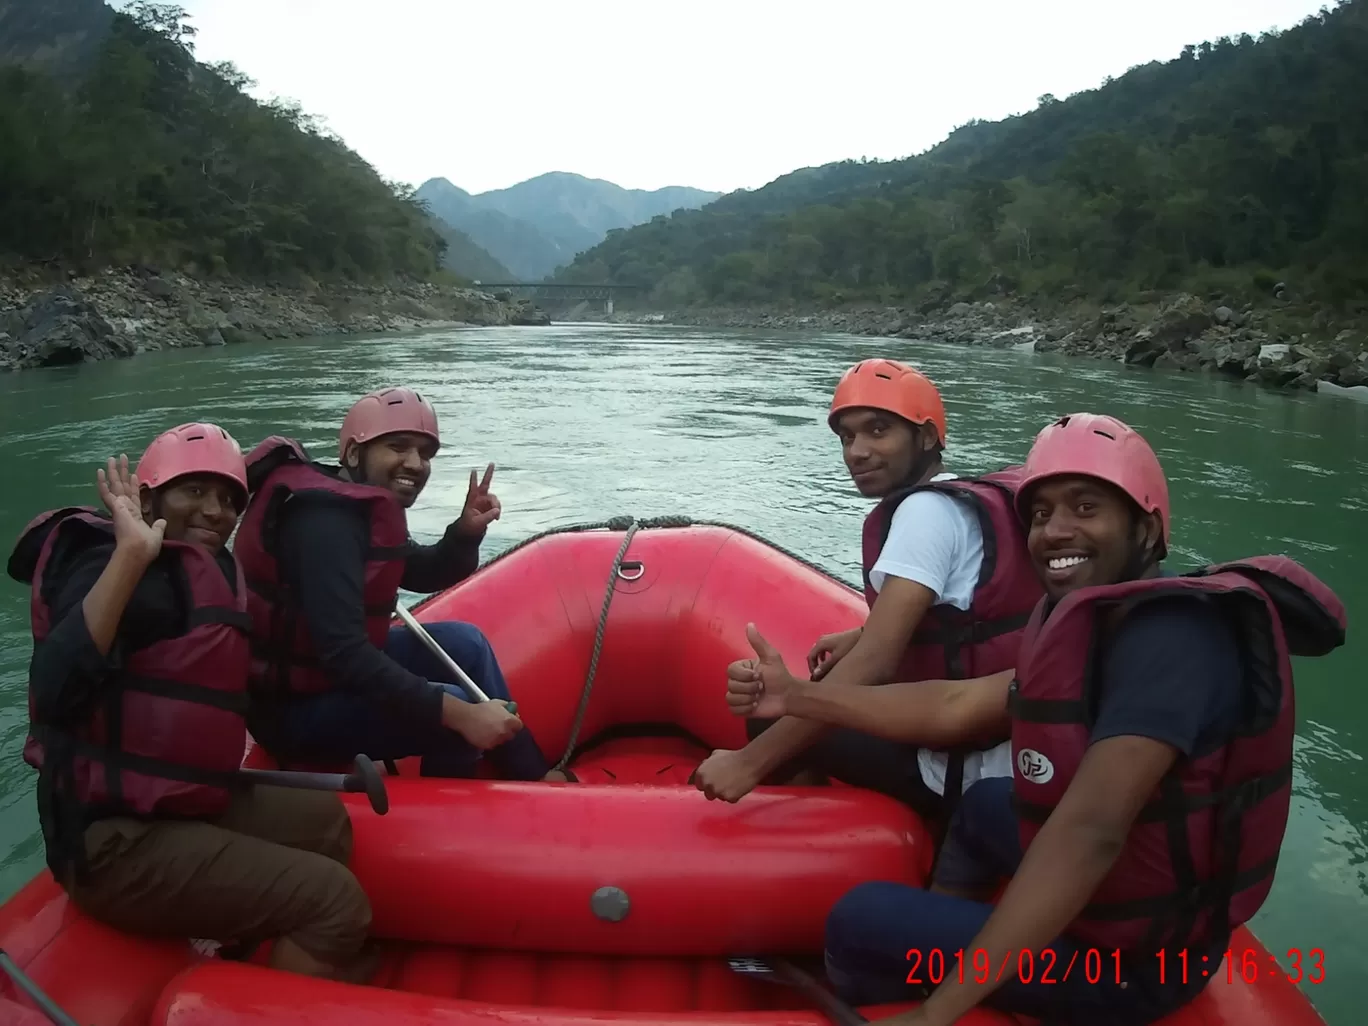 Photo of Rishikesh River Rafting By Kothapalli BhuvanaChandra